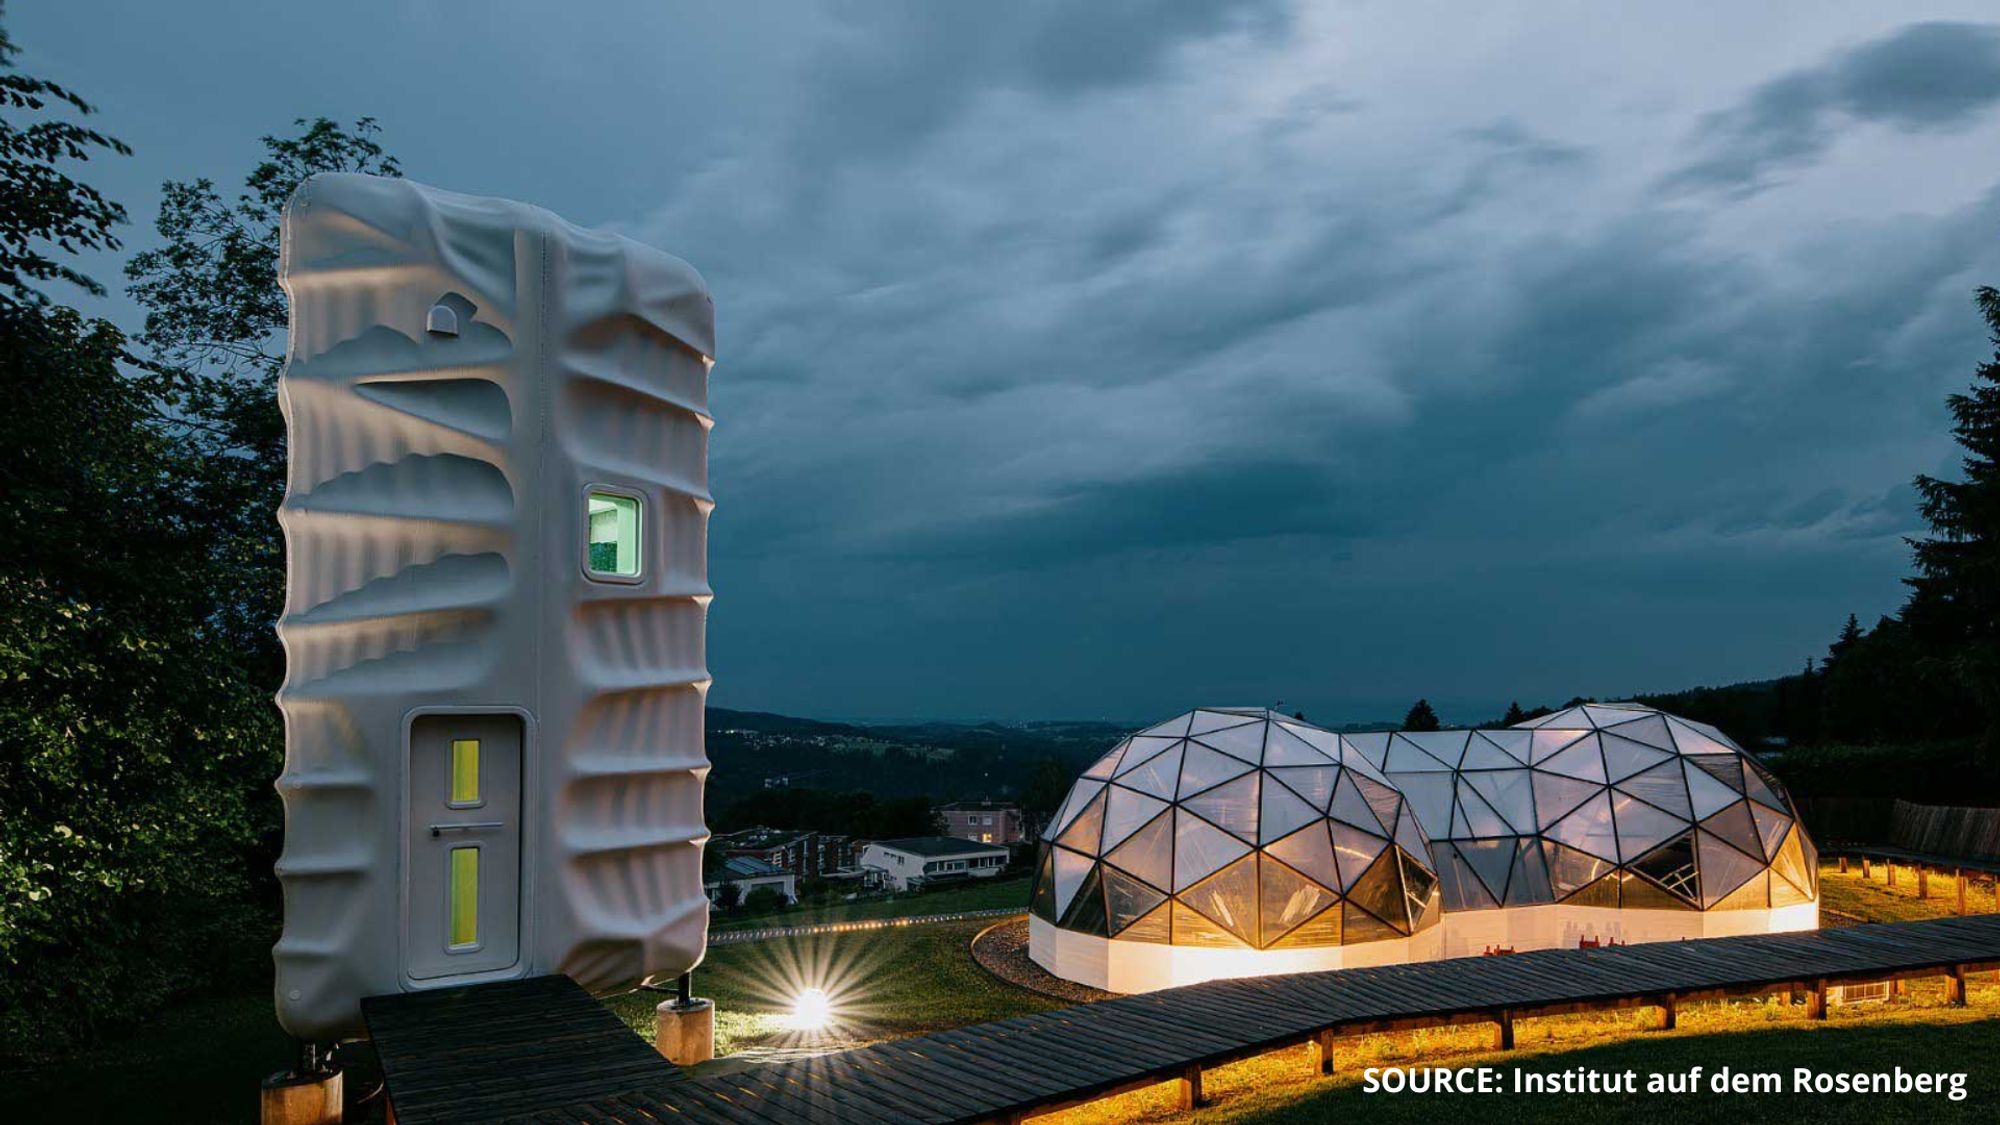 3D Printed Space Habitat Lands at Institut auf dem Rosenberg